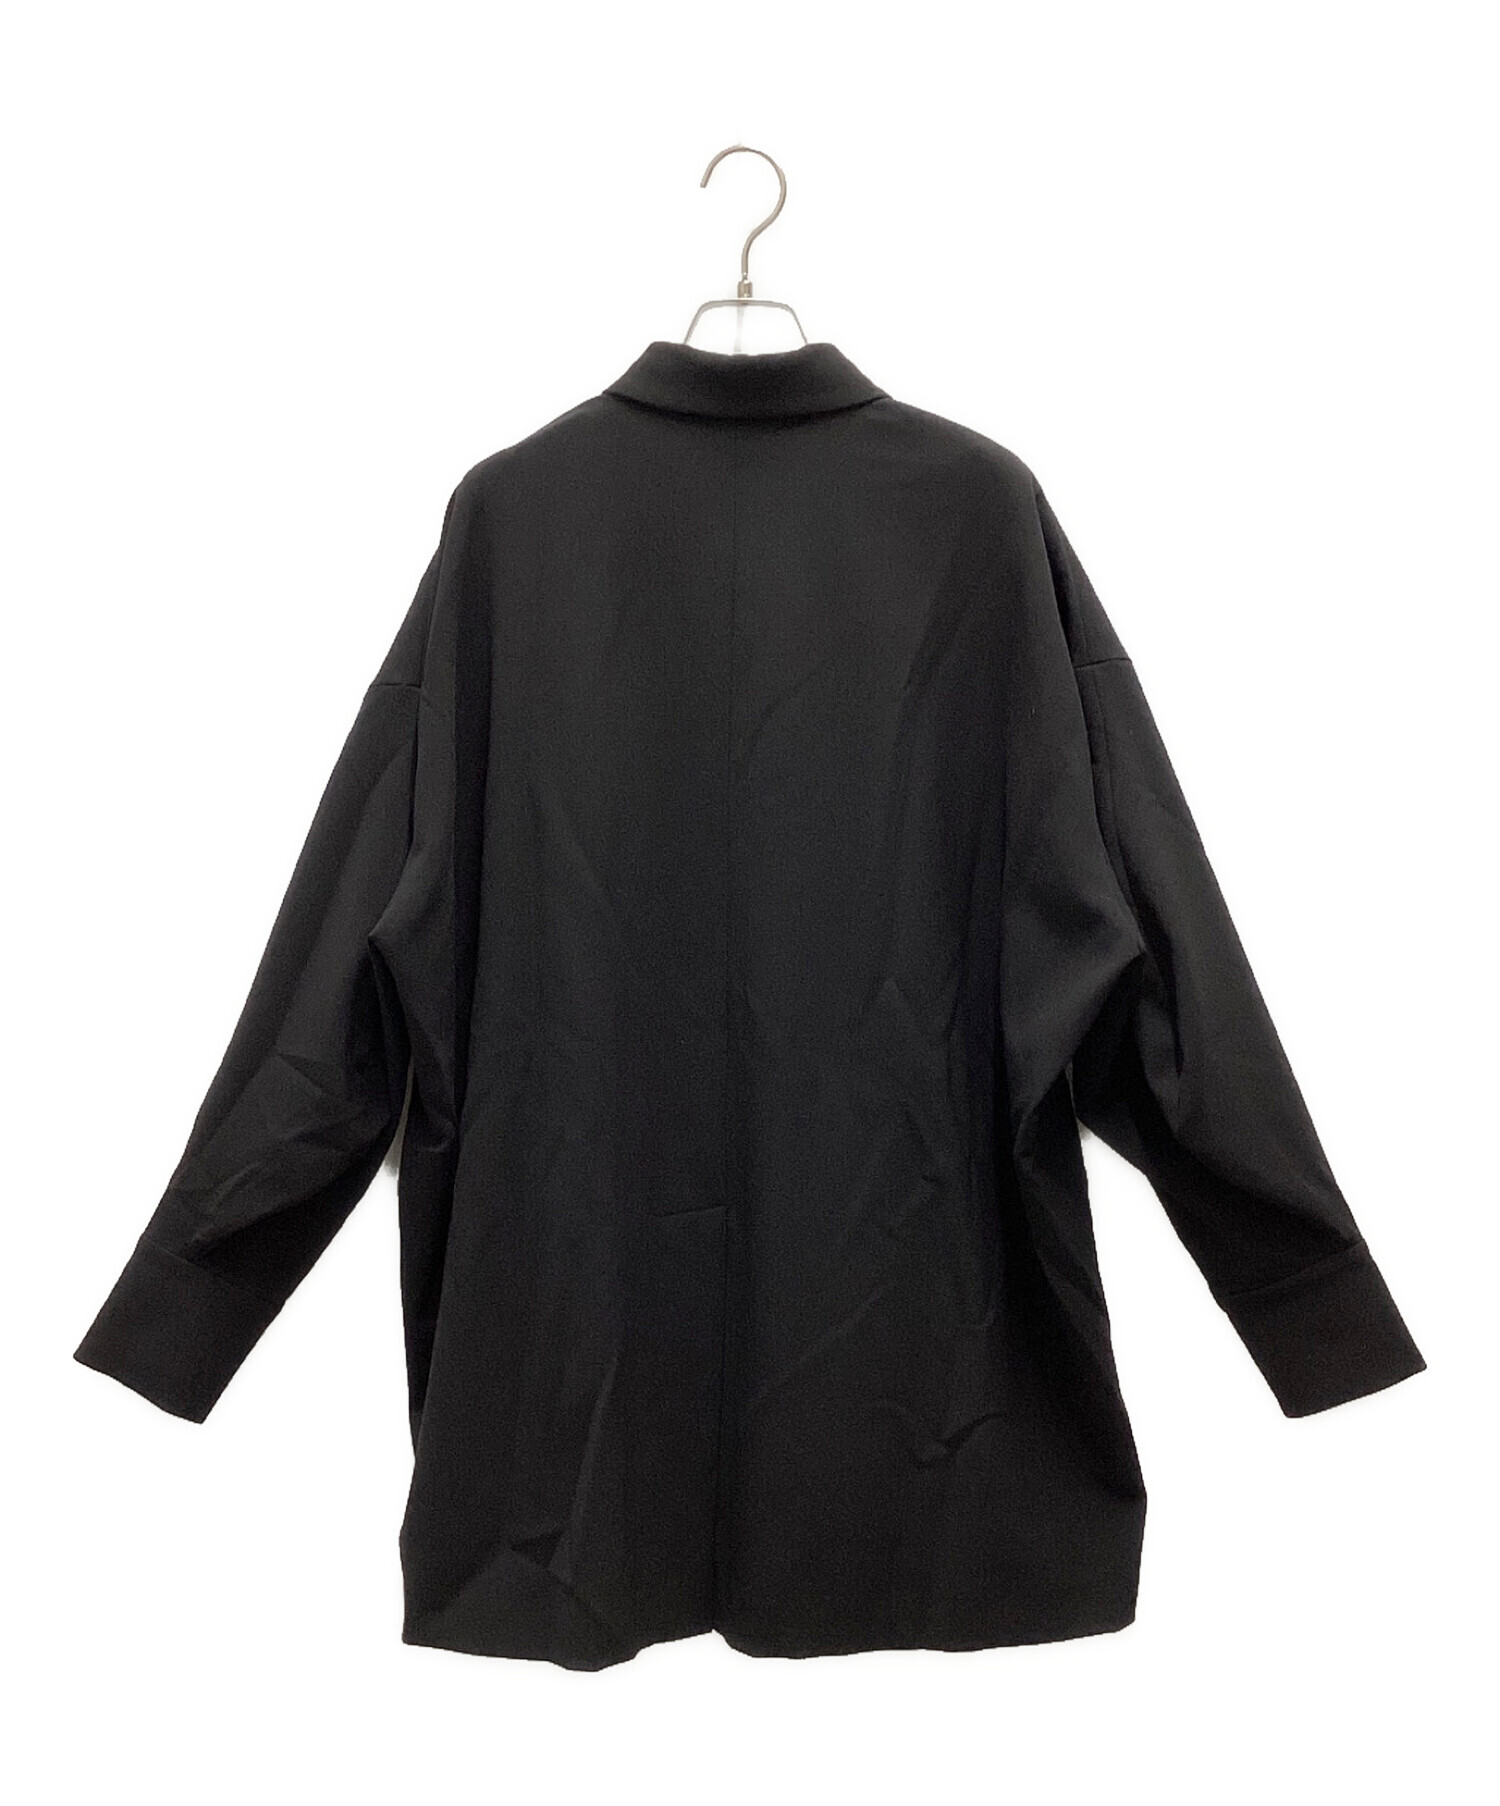 ENFOLD (エンフォルド) ダブルクロスカーブアームポロシャツ ブラック サイズ:38